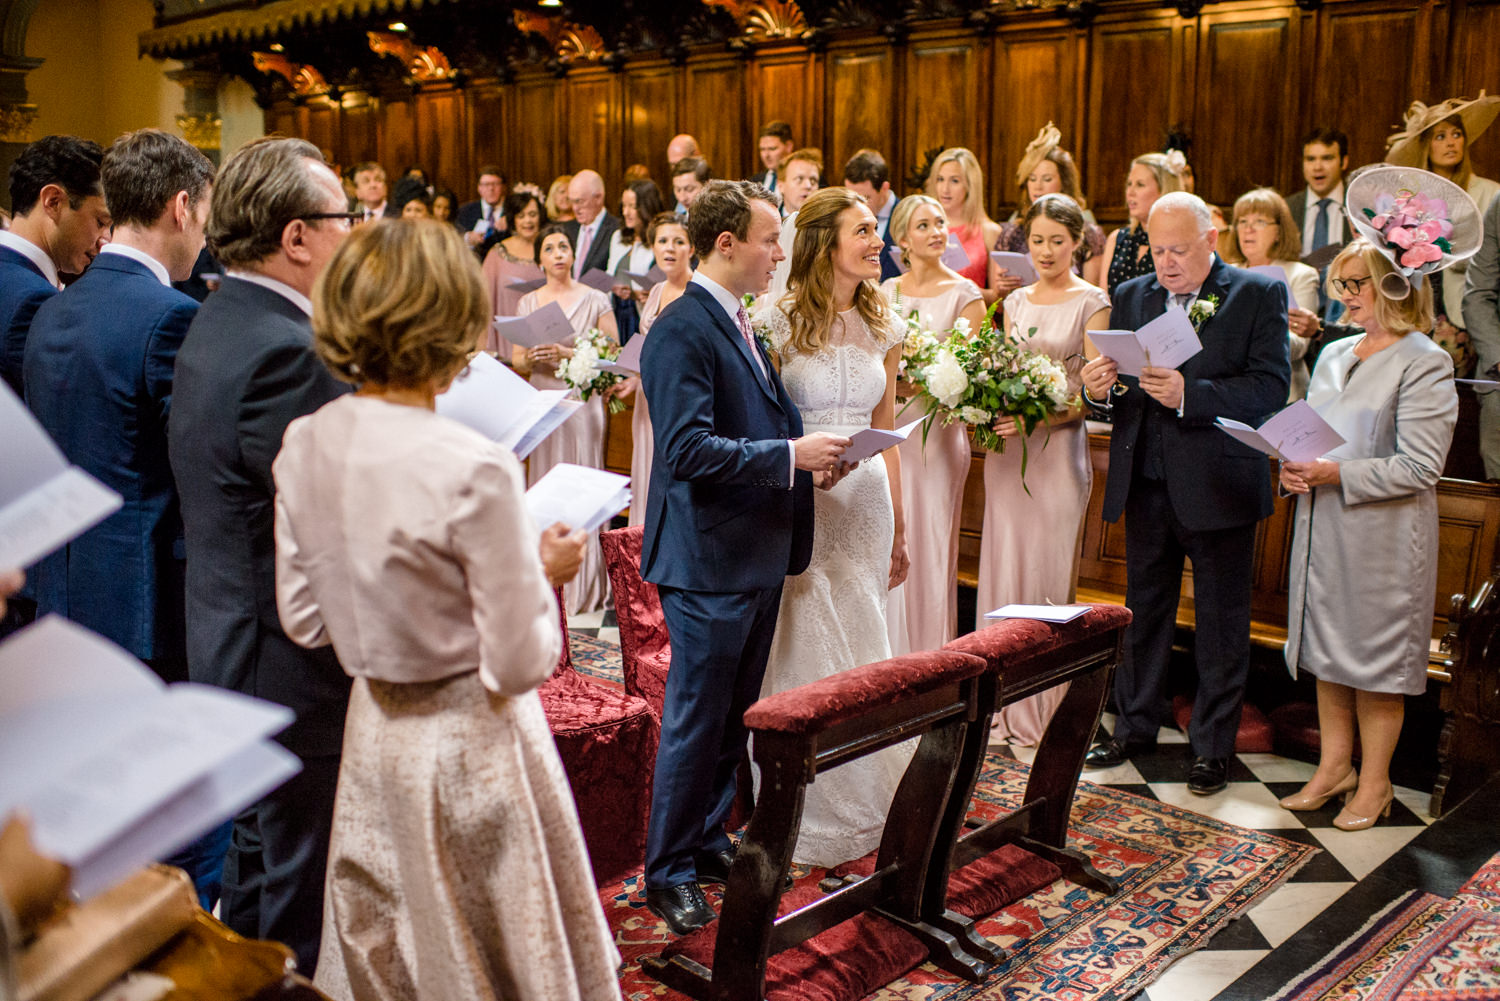 The Brompton Oratory wedding ceremony